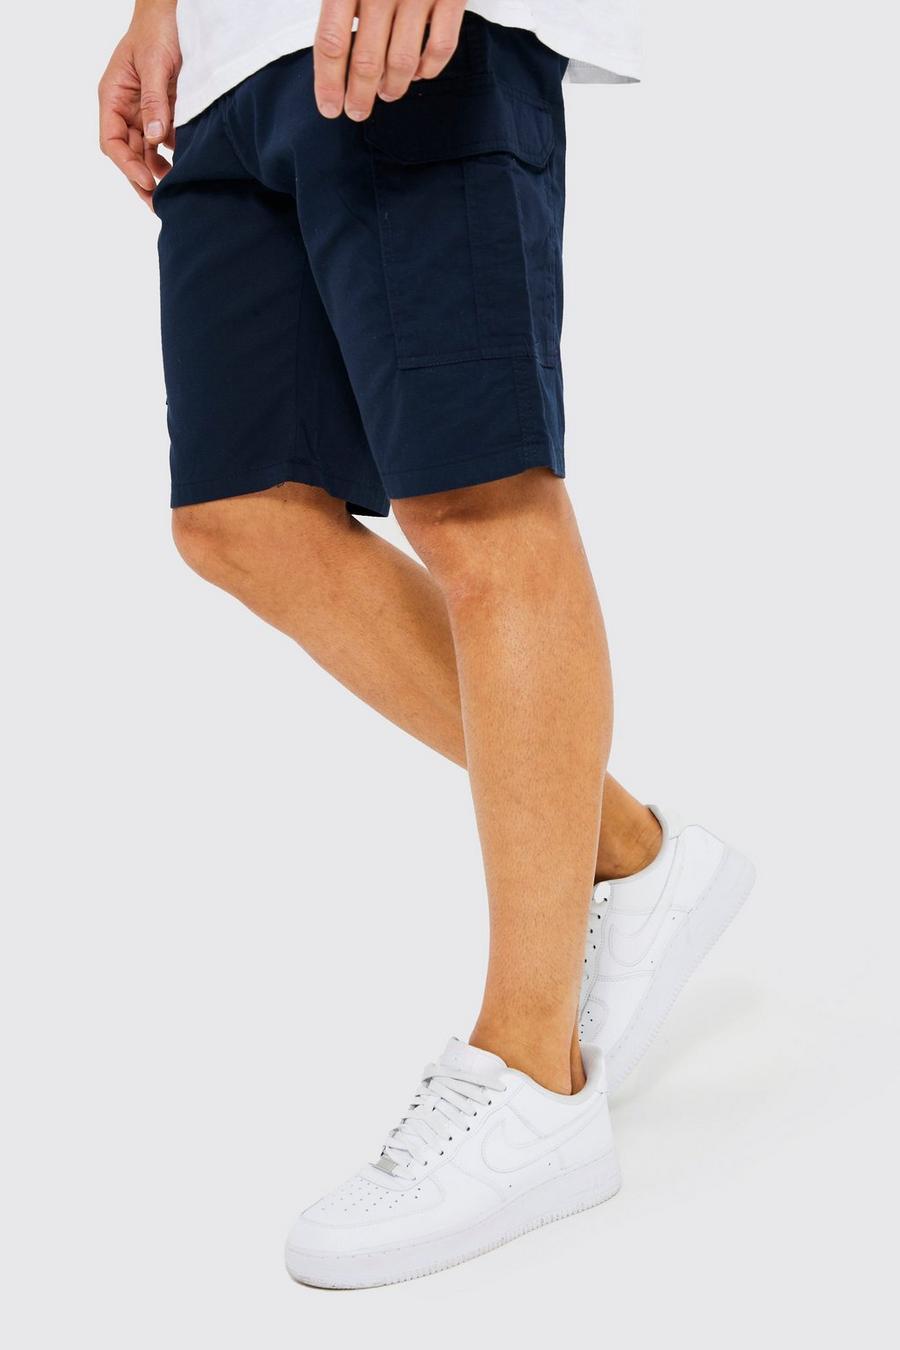 Pantalón corto Tall cargo con cintura fija, Navy azul marino